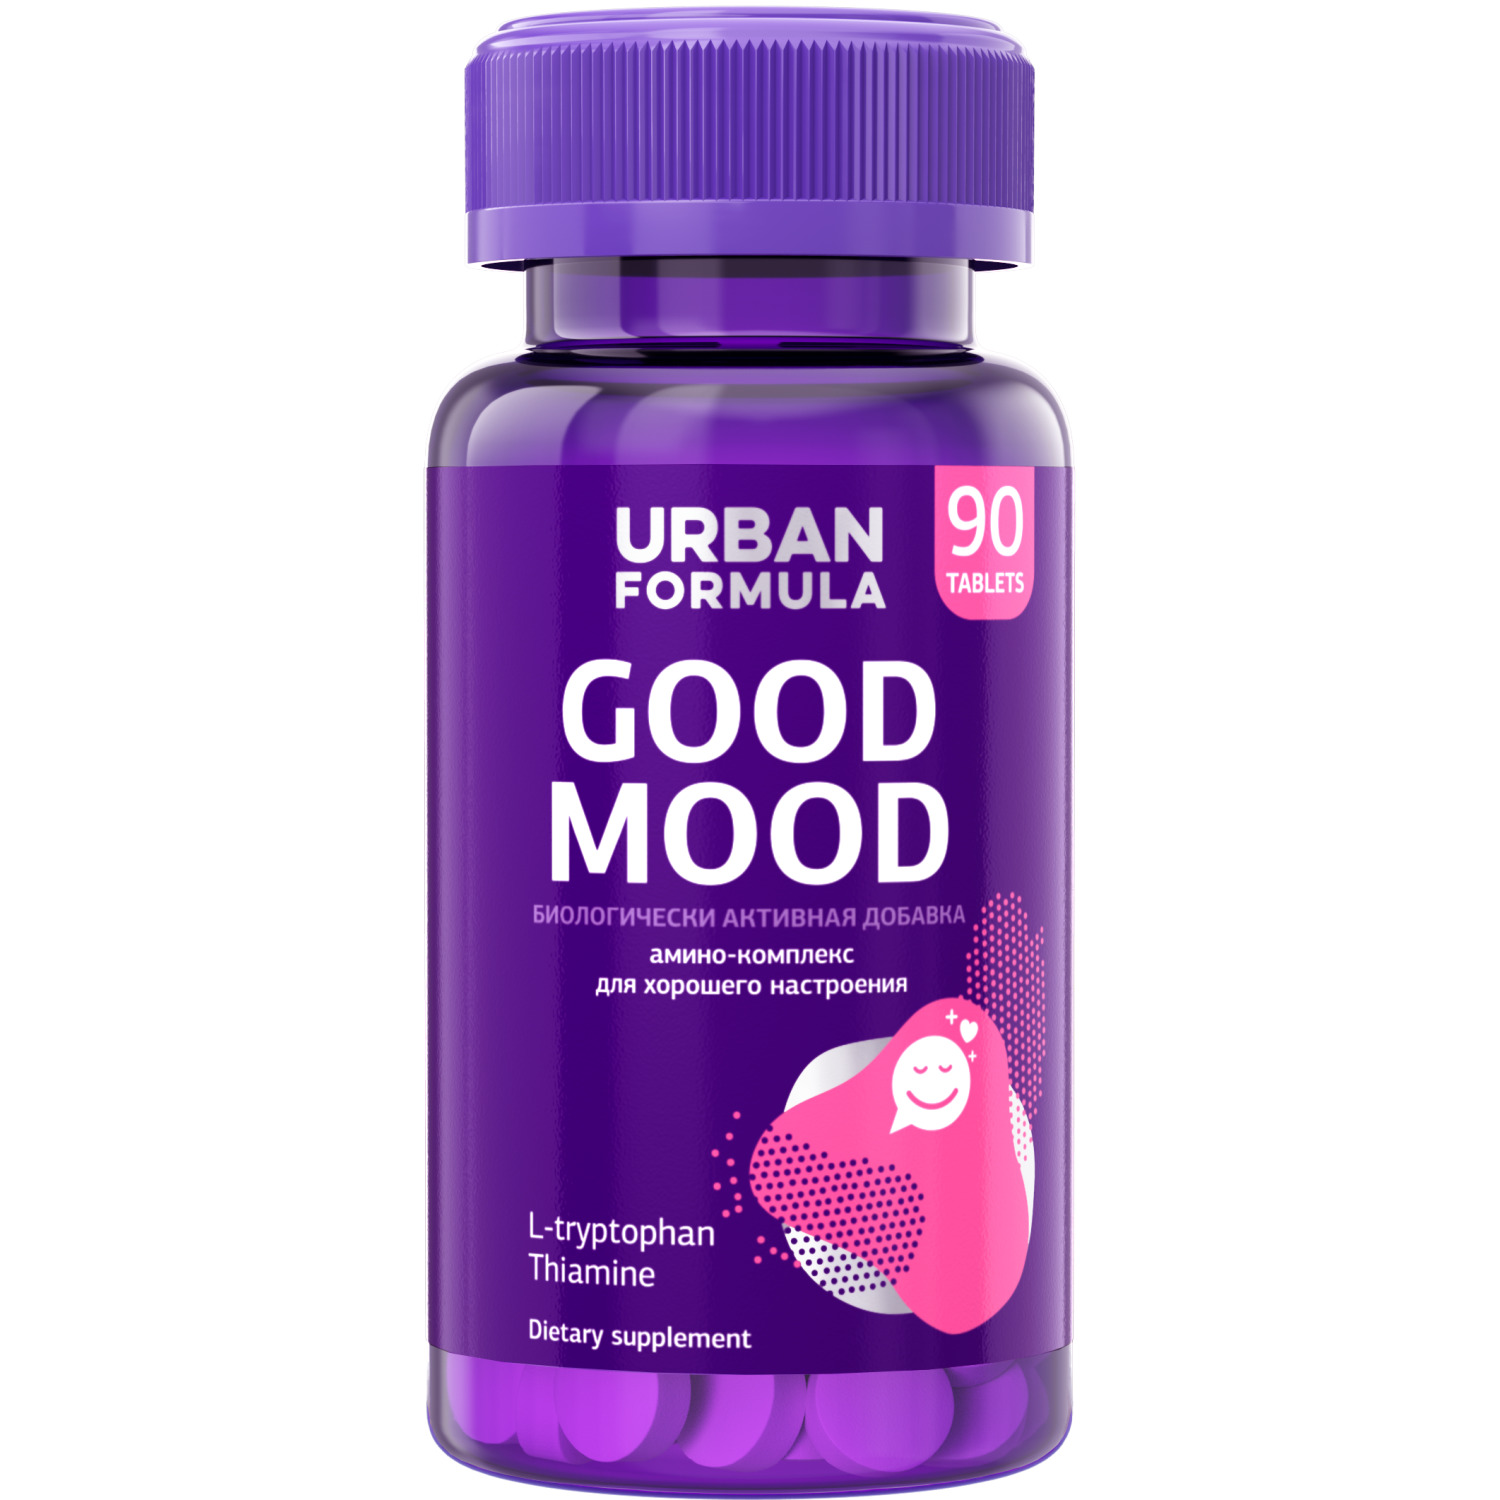 Комплекс для поднятия настроения URBAN FORMULA Good Mood с L-триптофаном, 90 таблеток